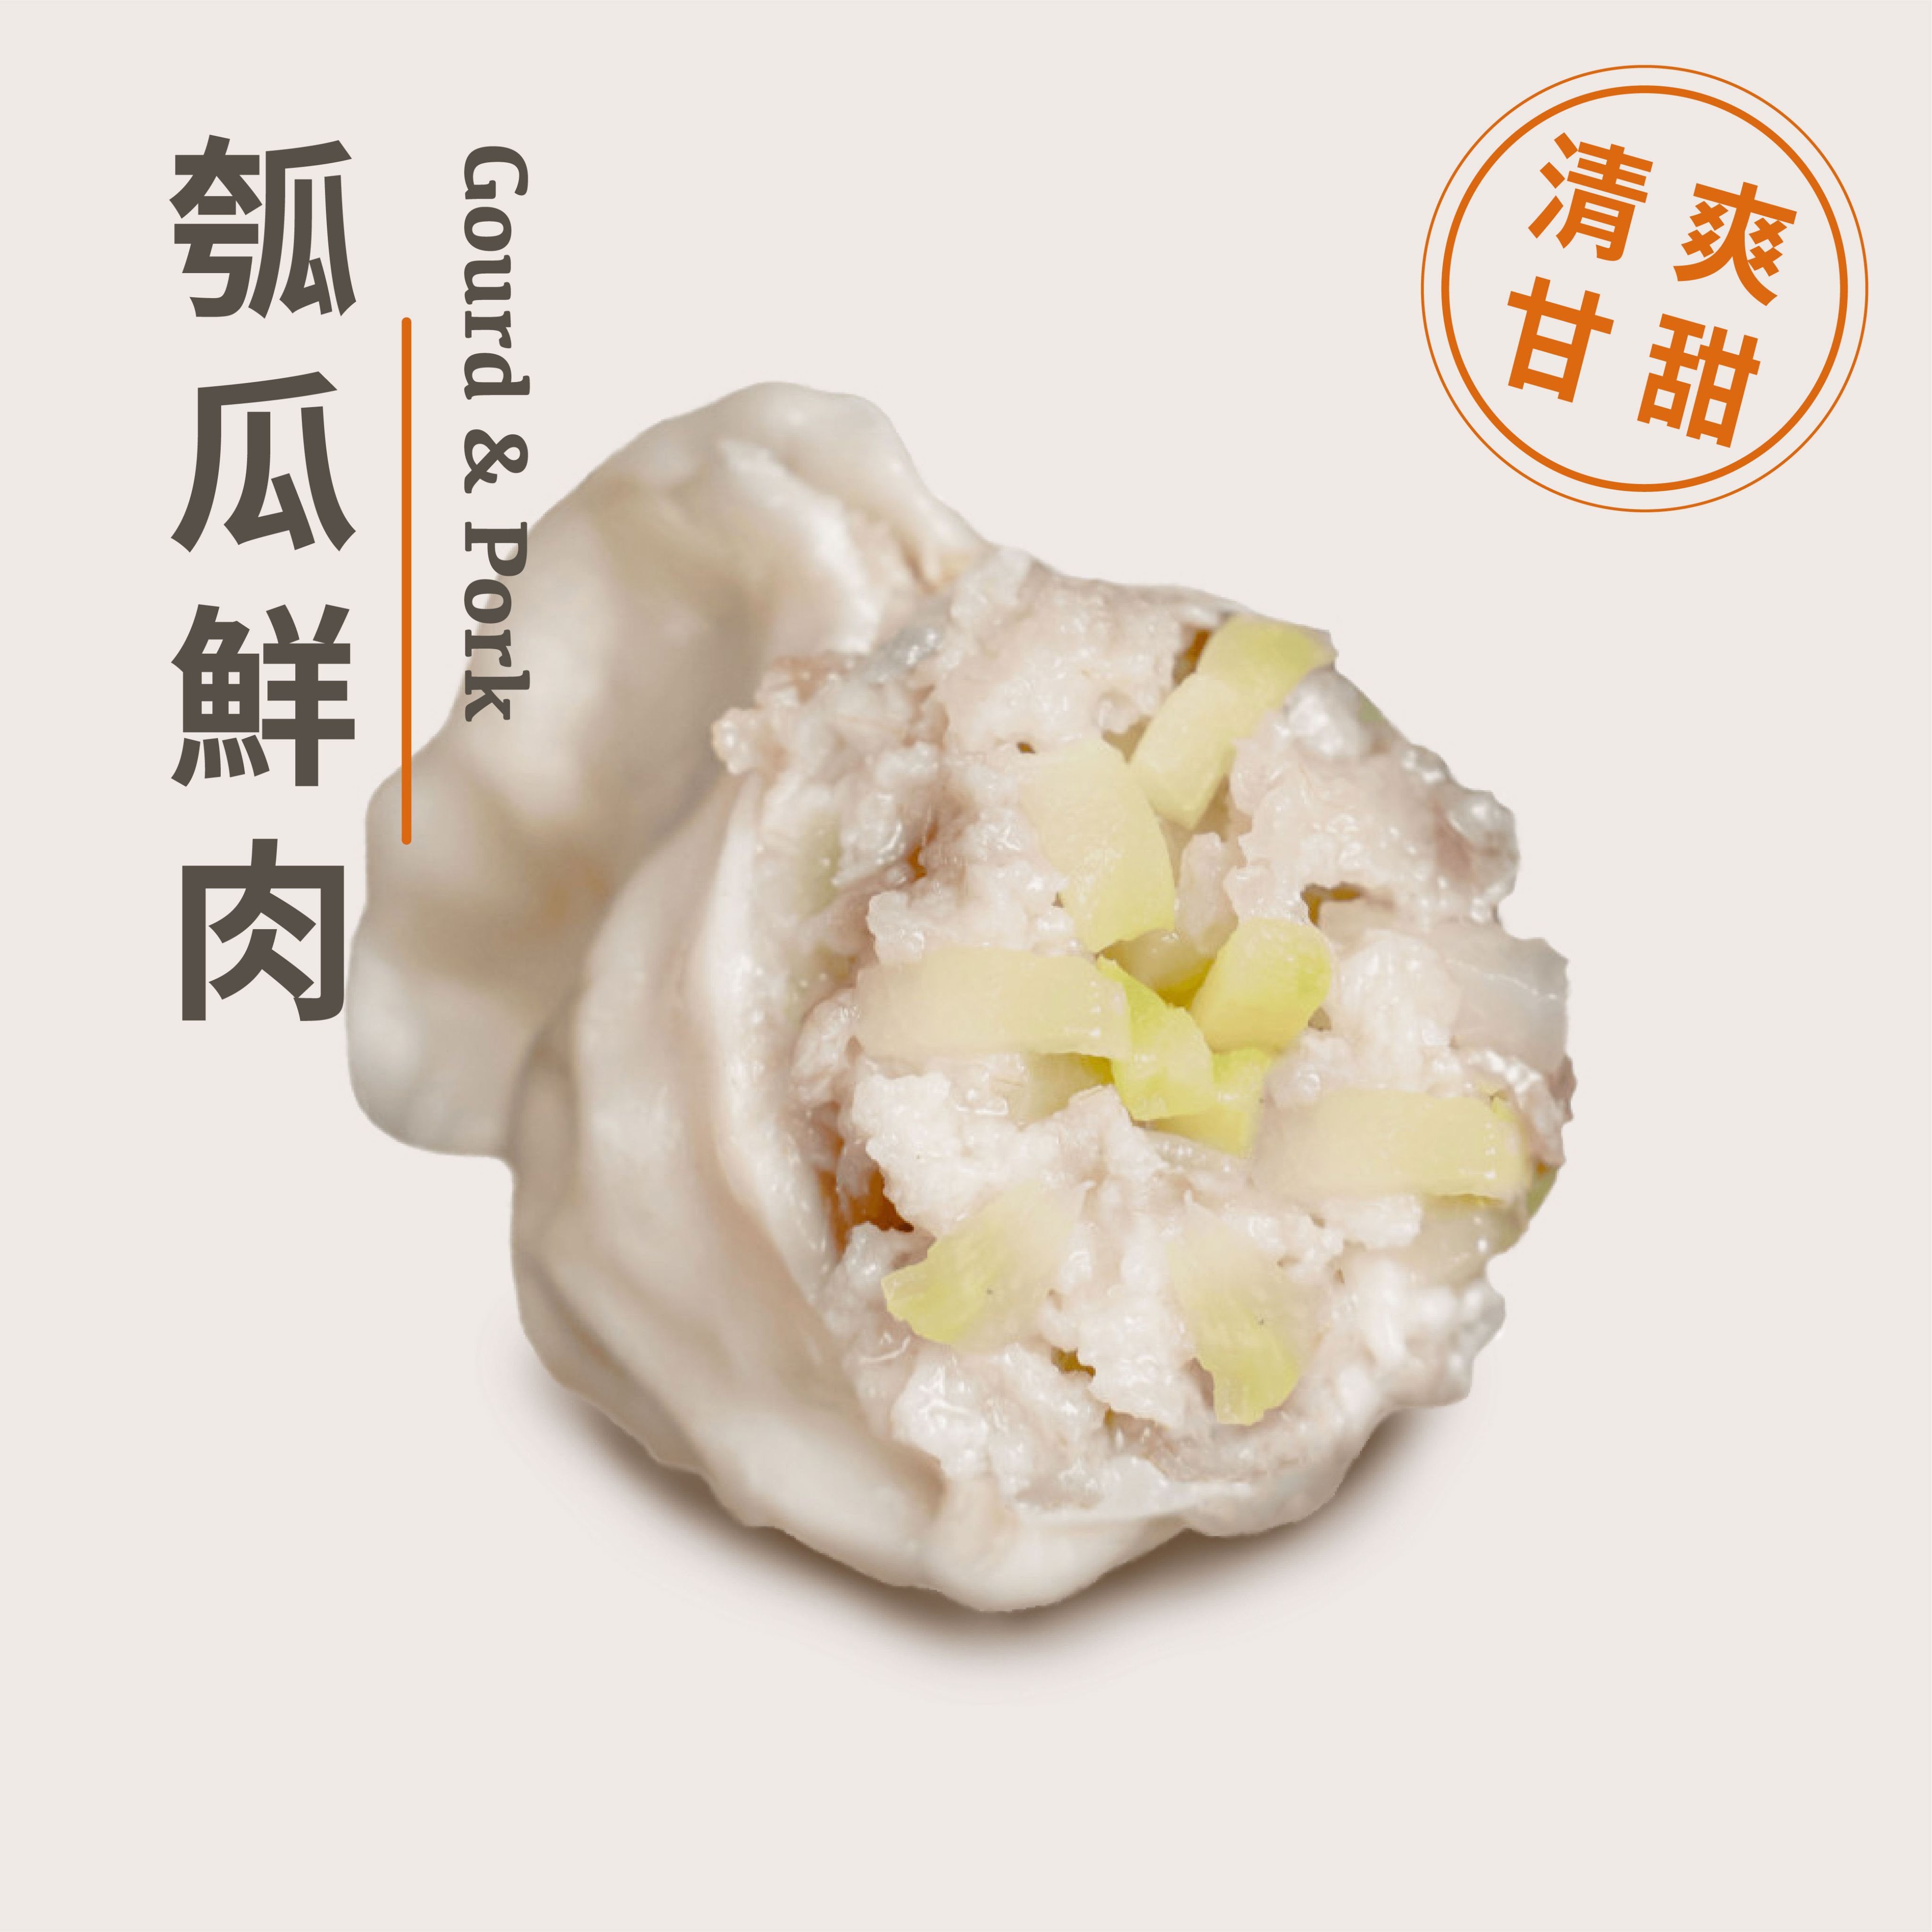 【純手工鮮豬肉餃子】瓠瓜鮮肉水餃 - 35粒